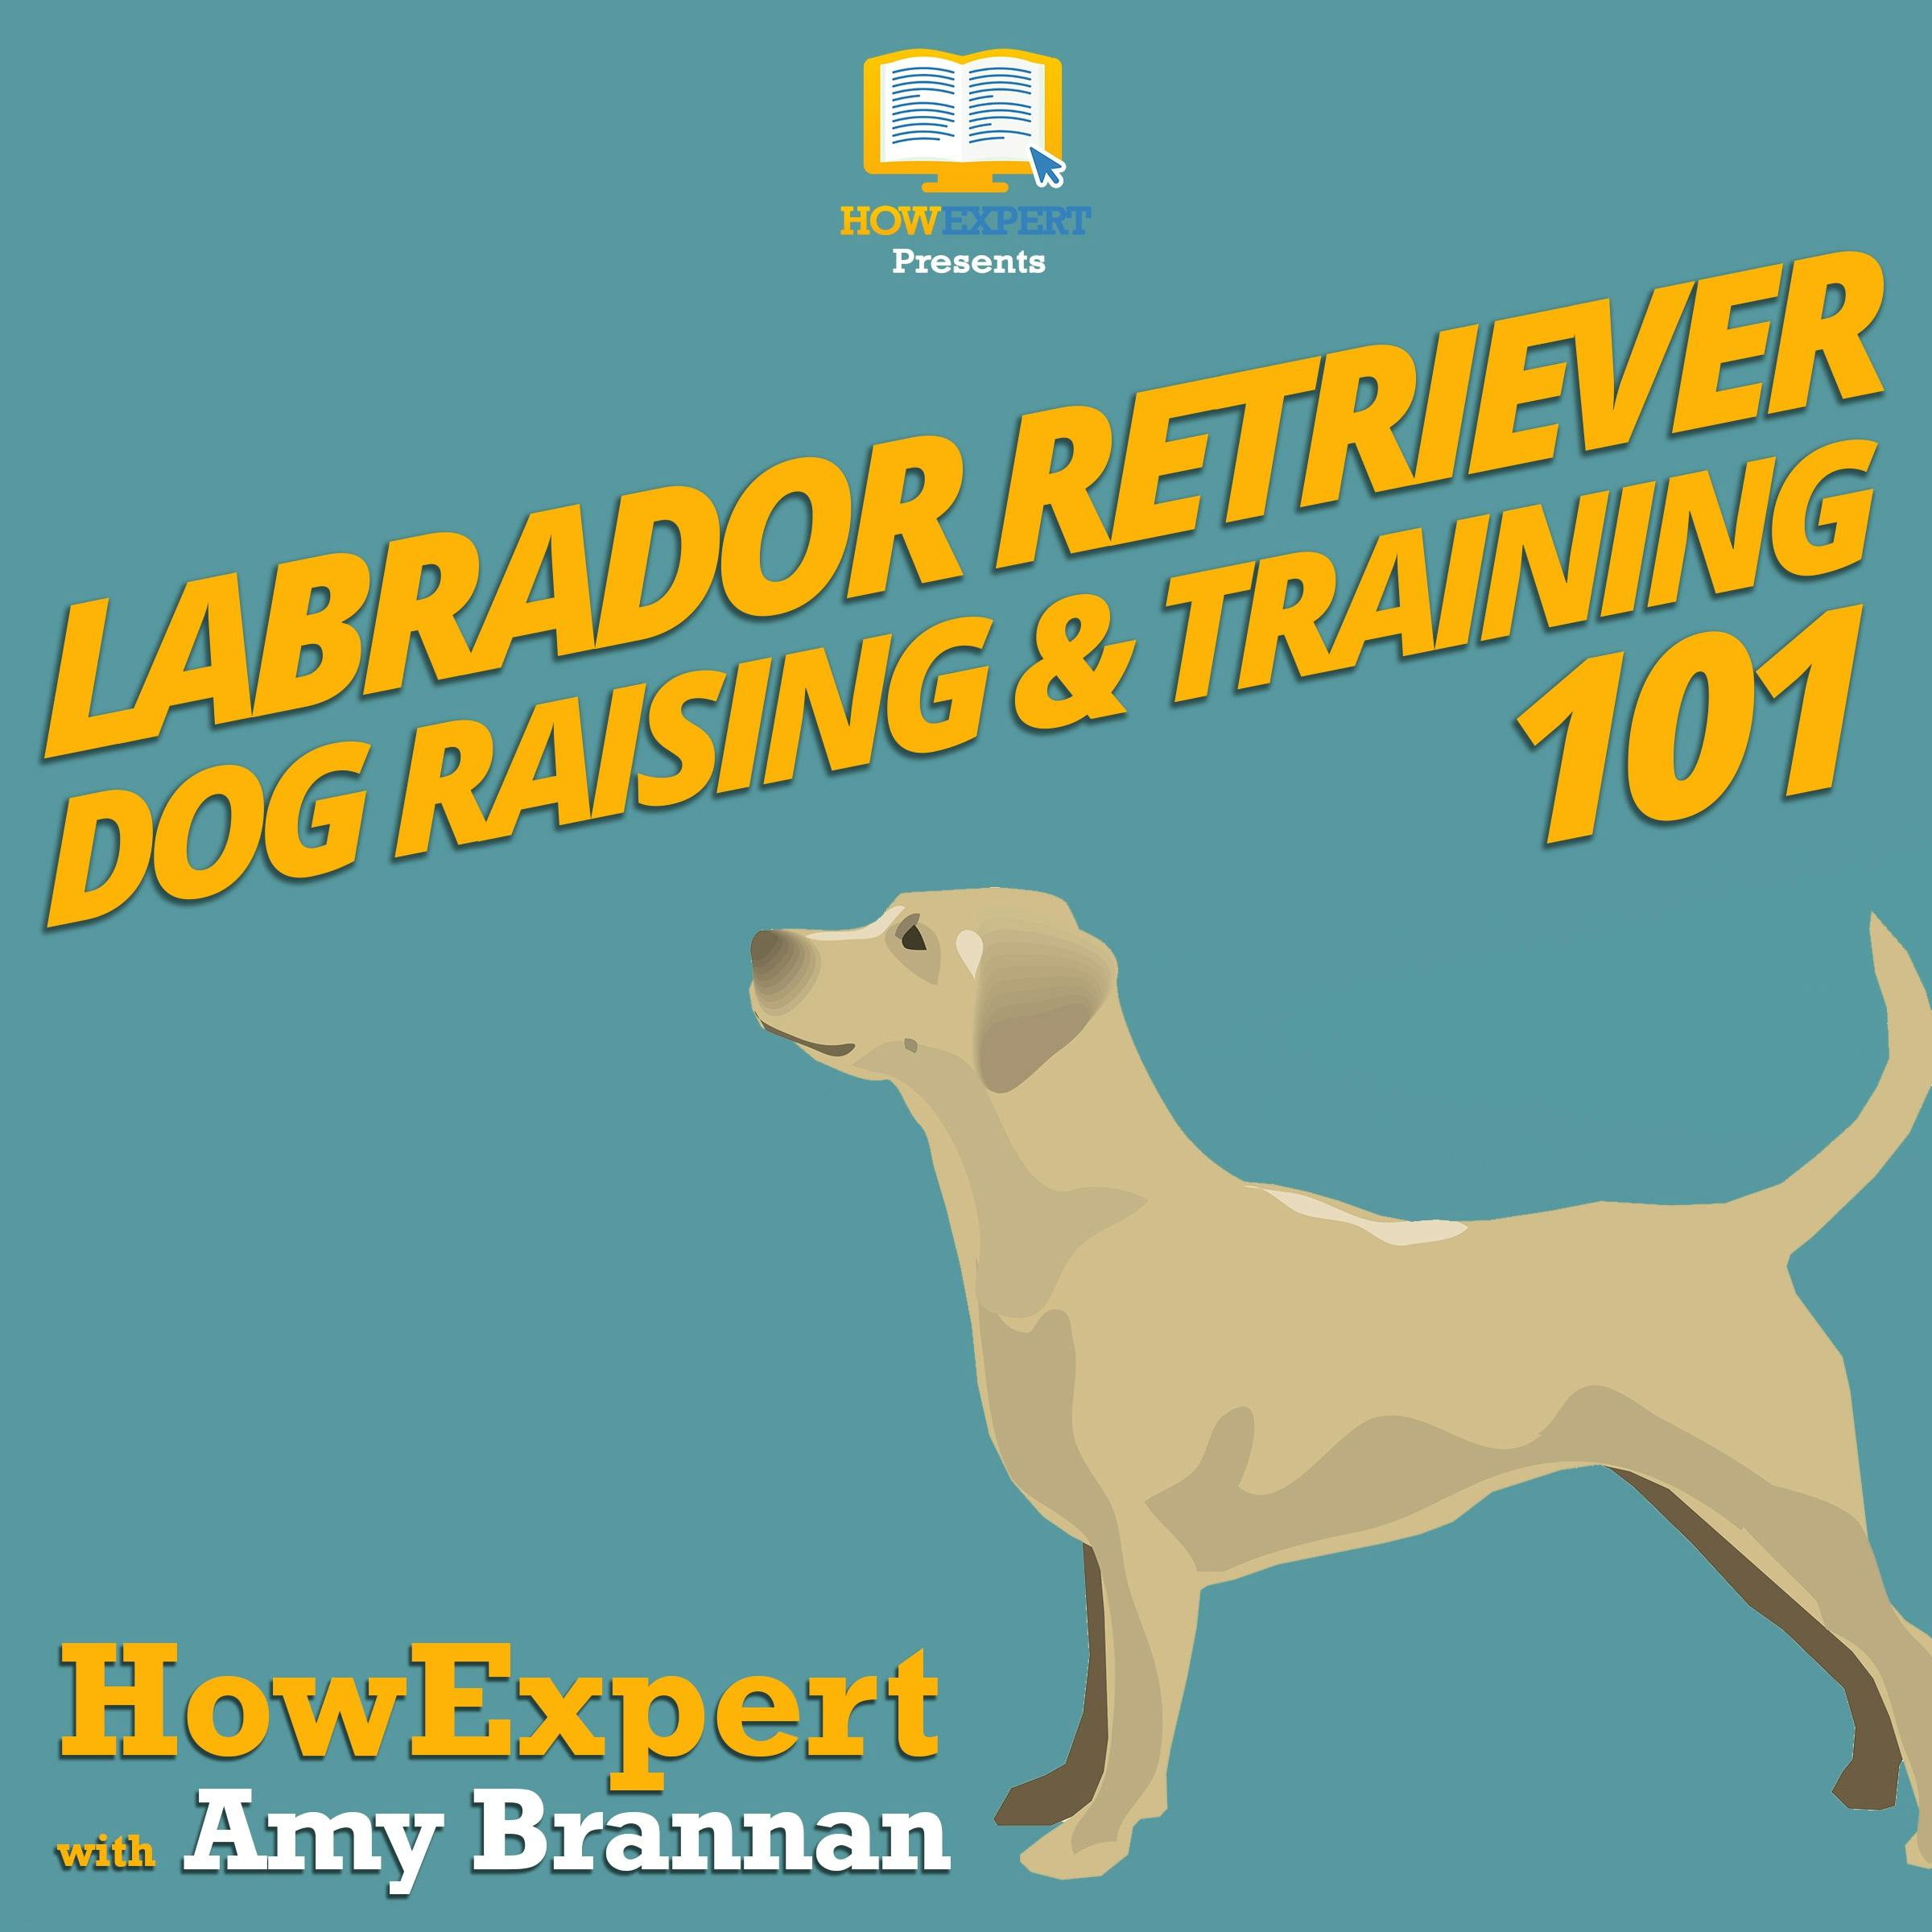 Labrador Retriever Dog Raising & Training 101 - Amy Brannan, HowExpert